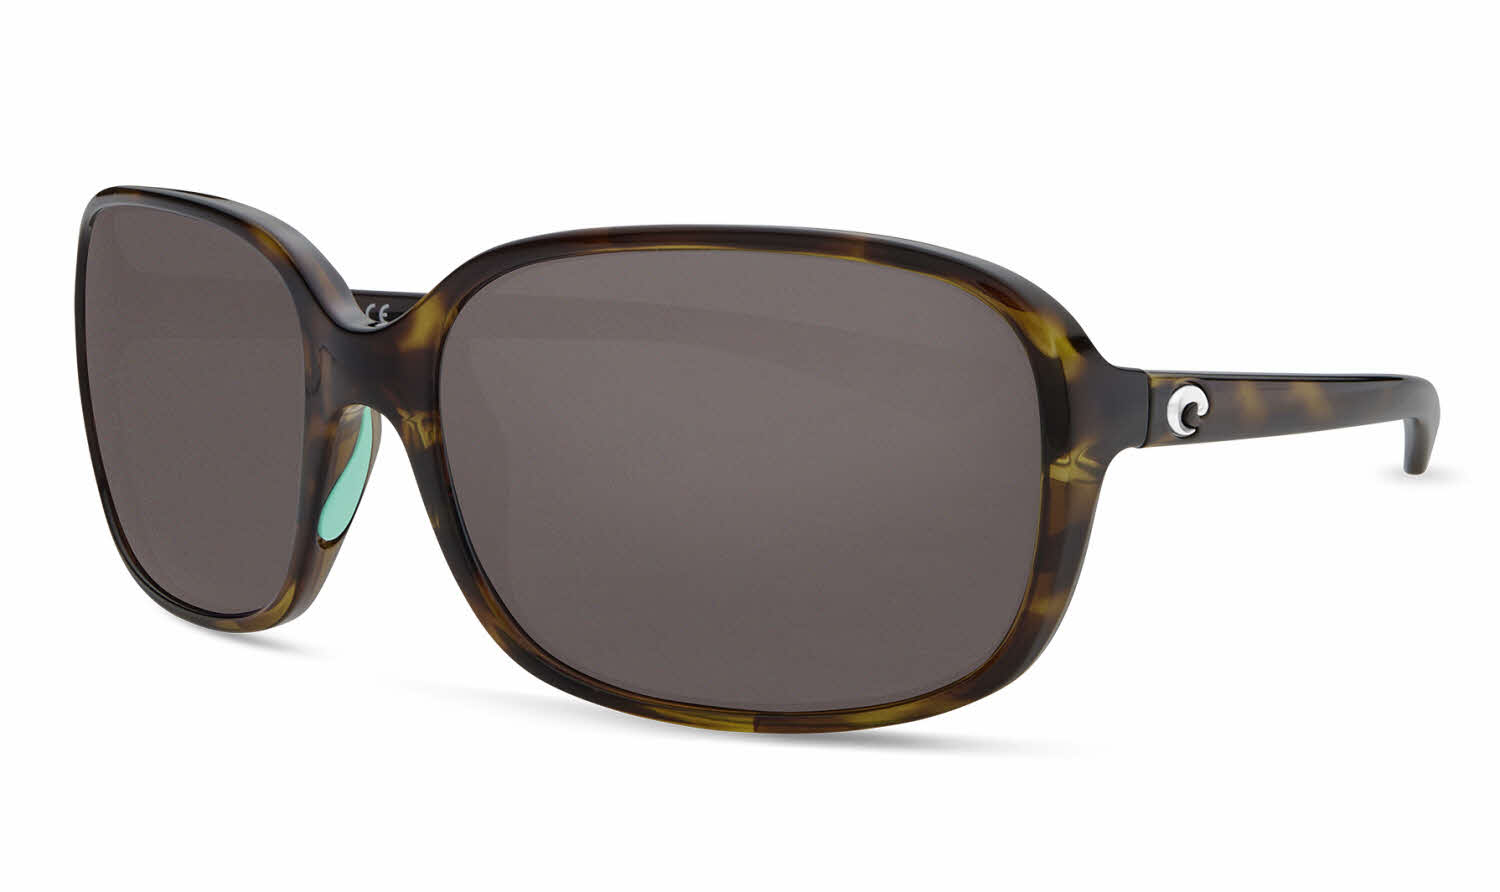 Costa Riverton Sunglasses